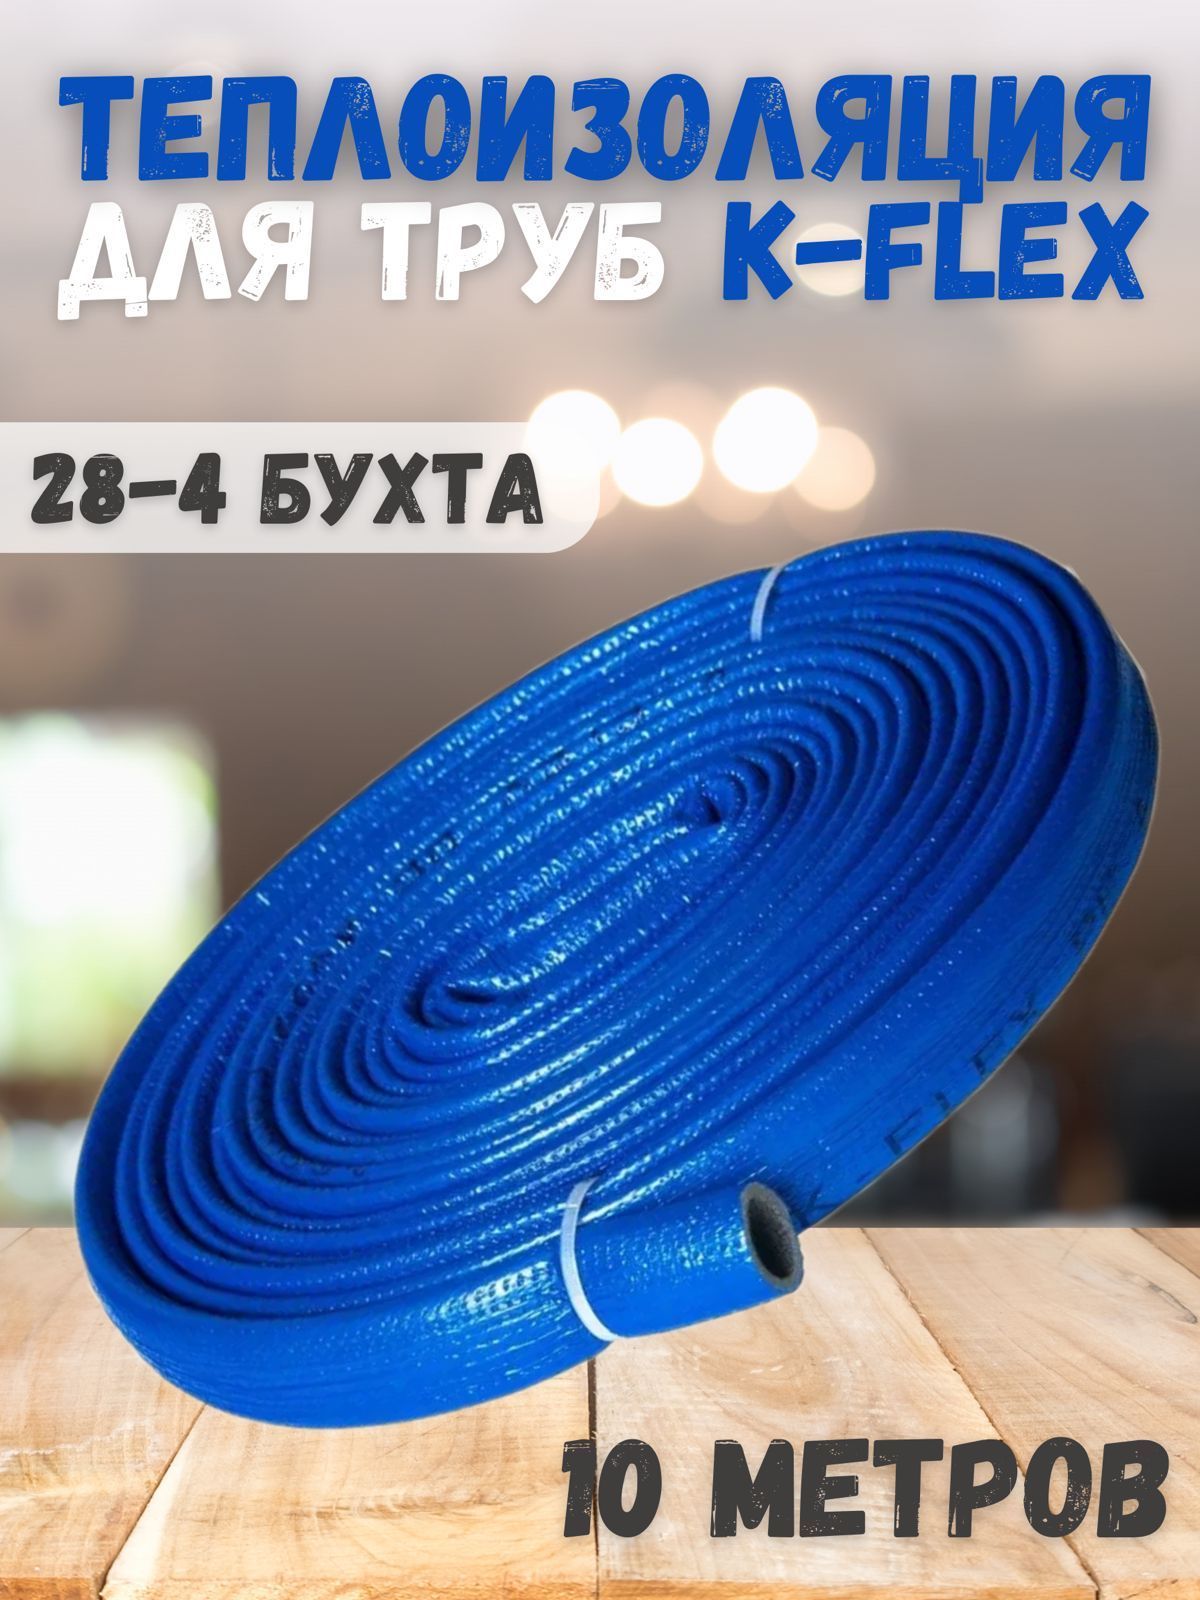 K flex pe compact. Трубчатая изоляция самоклеющаяся k-Flex pe Compact для д 40мм. K-Flex Compact в синей оболочке 18/4 бухта 10м. Трубка k-Flex pe 06x035-2 Compact Red. Трубчатый утеплитель 90×9.